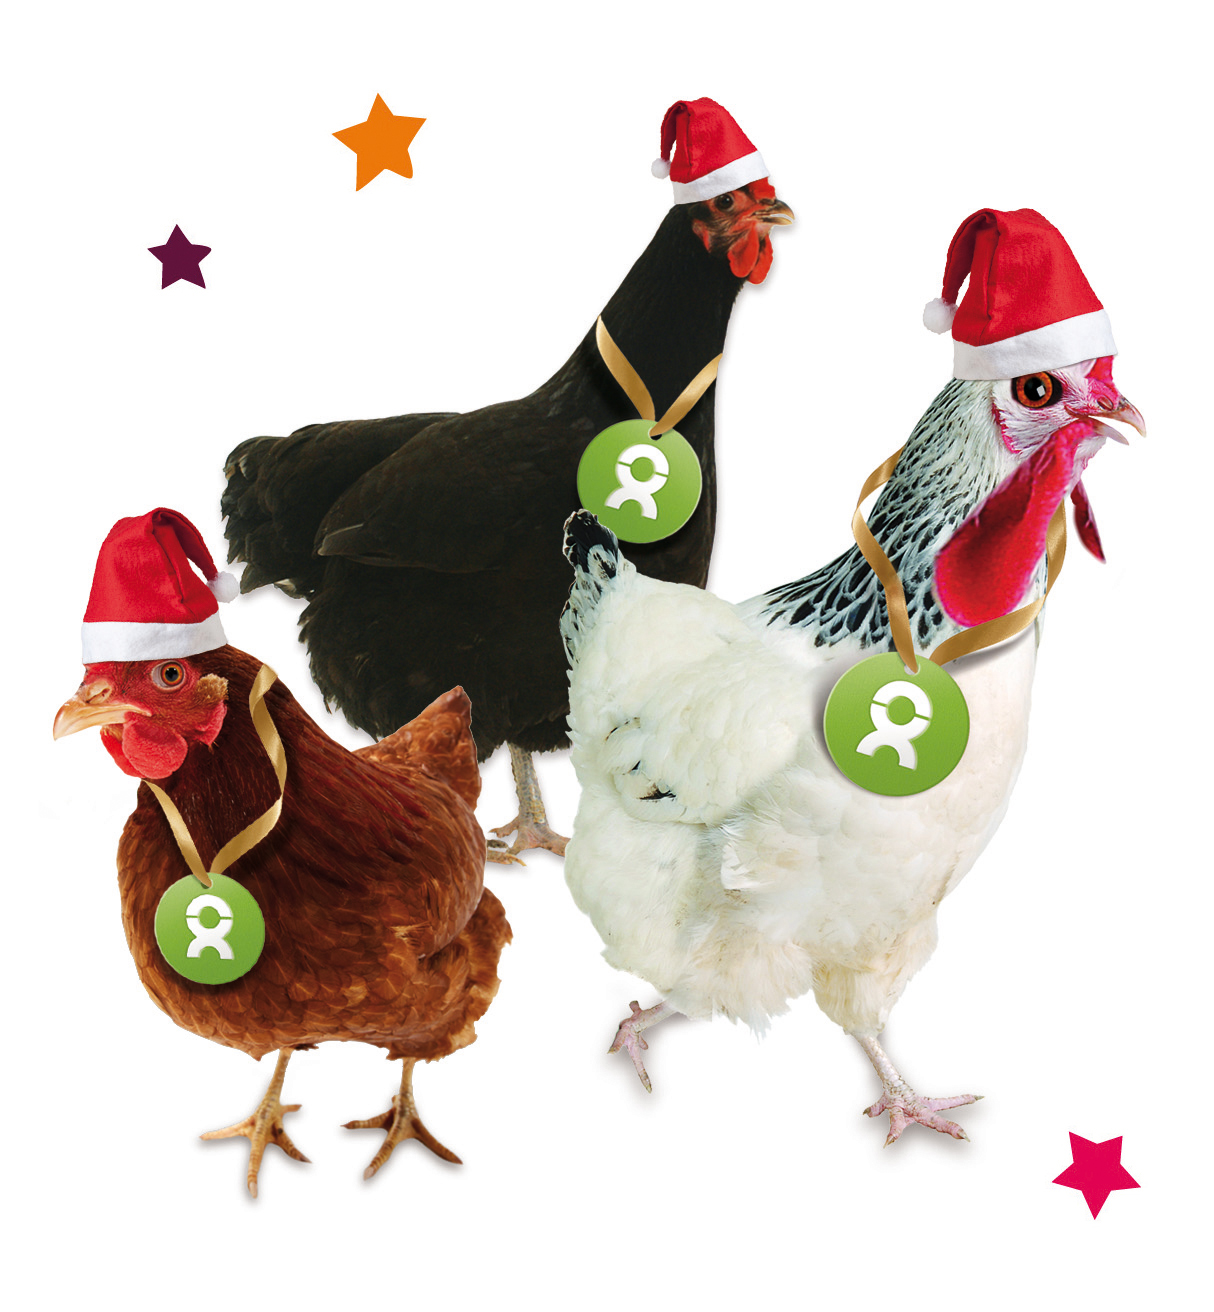 Beispiel Geschenk Spende: Grafik von einem weiß-, braun- und schwarz-gefiederten Huhn mit Weihnachtsmützen und Sternen